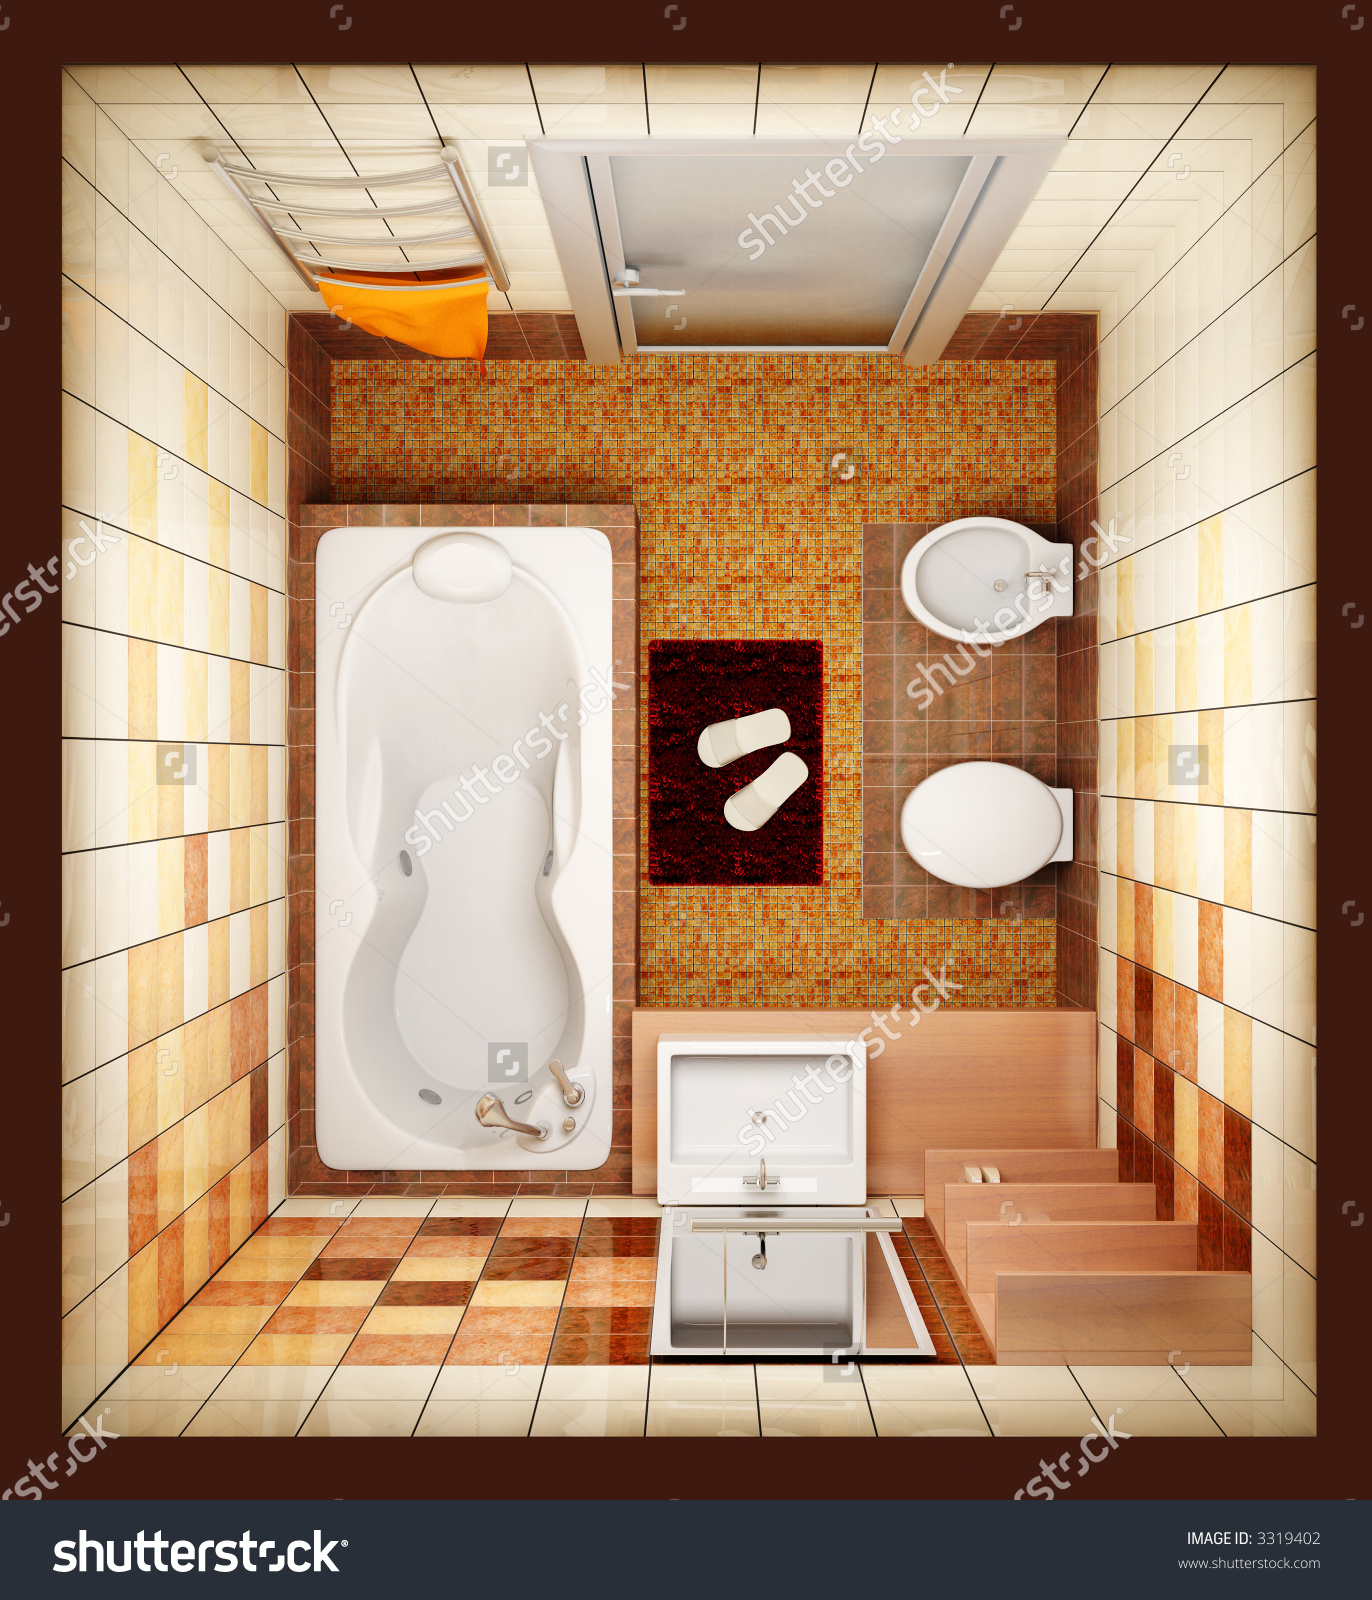 Рисунок ванной комнаты в перспективе с мебелью